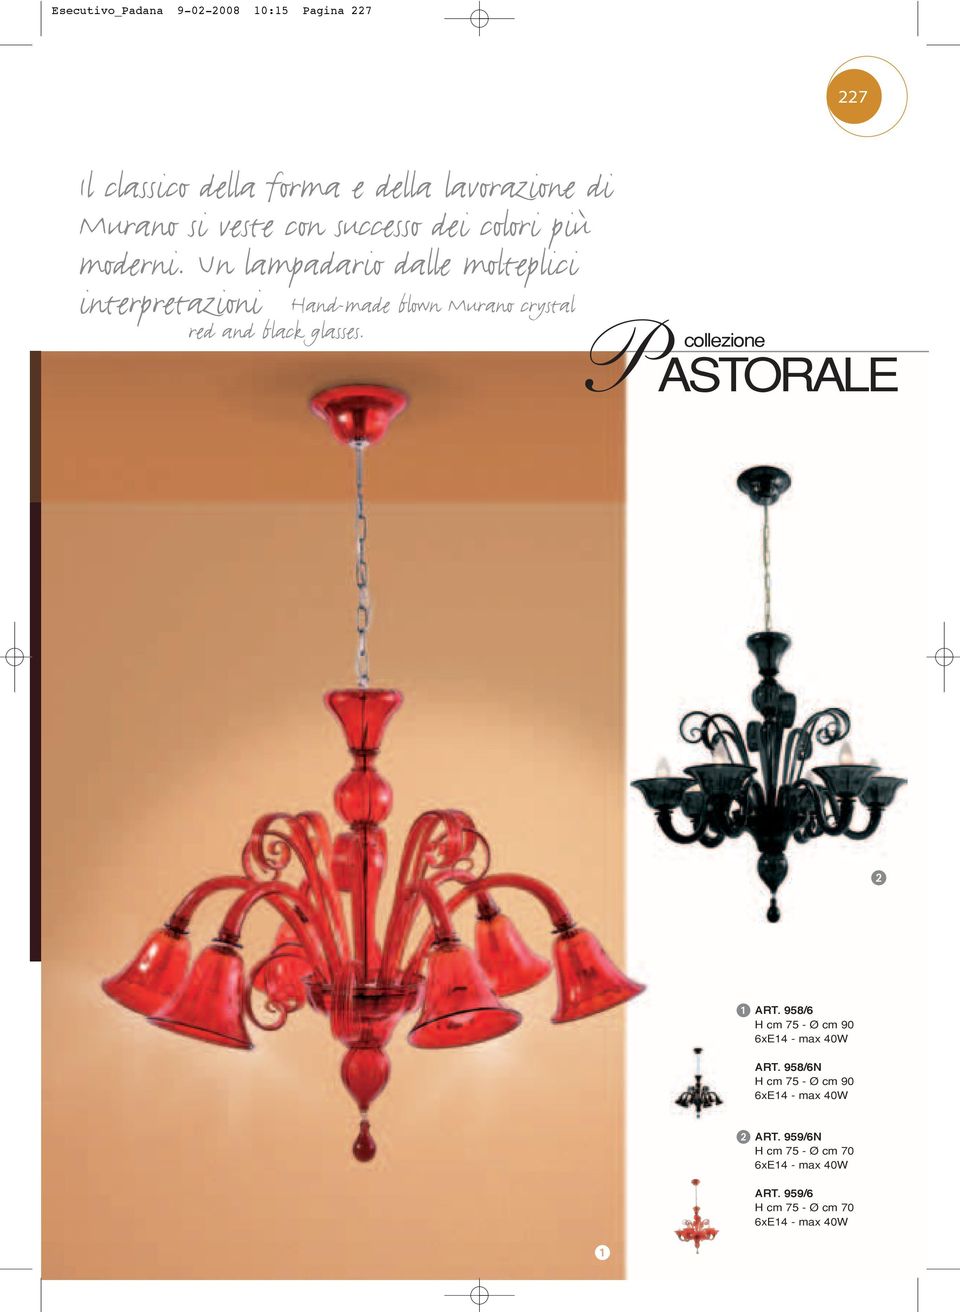 Un lampadario dalle molteplici interpretazioni Hand-made blown Murano crystal red and black glasses.